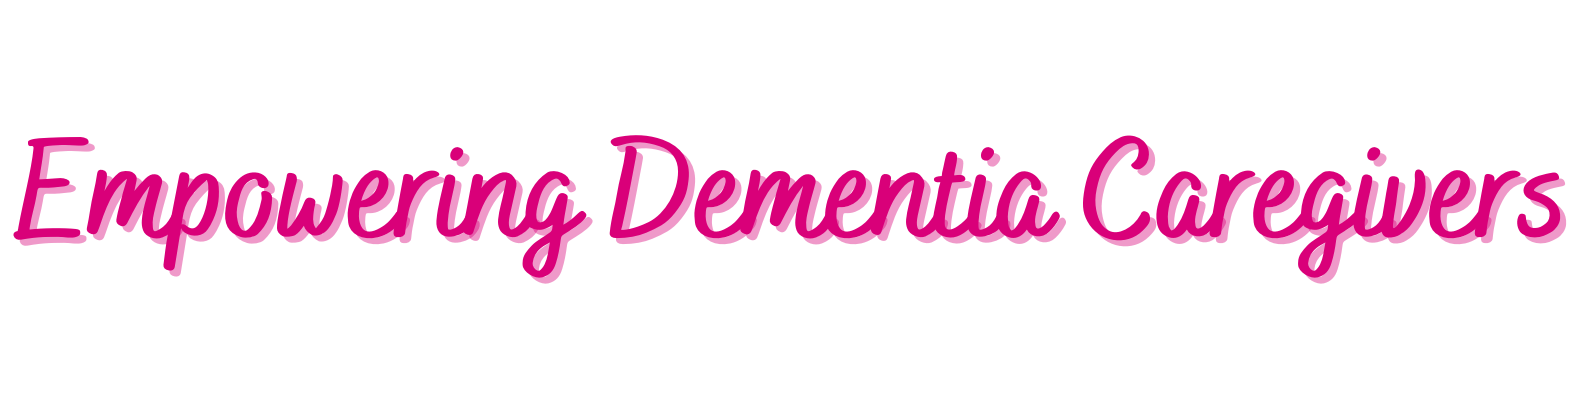 Empowering Dementia Caregivers